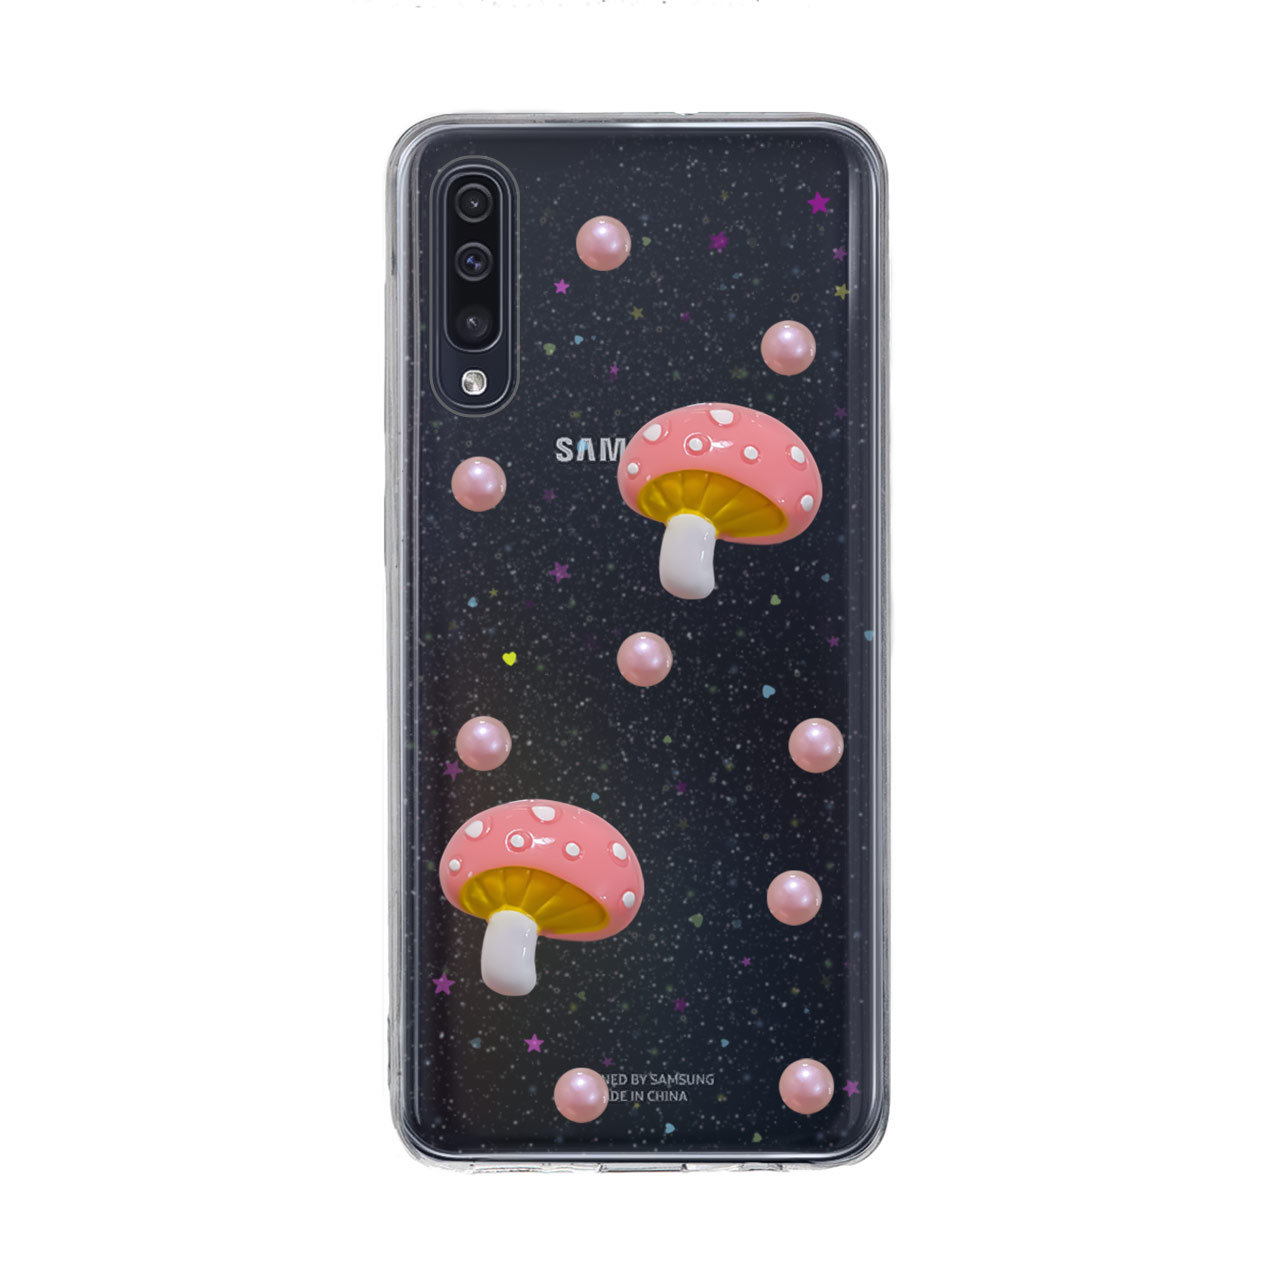 کاور دکین مدل Nitid طرح قارچ مناسب برای گوشی موبایل سامسونگ Galaxy A70